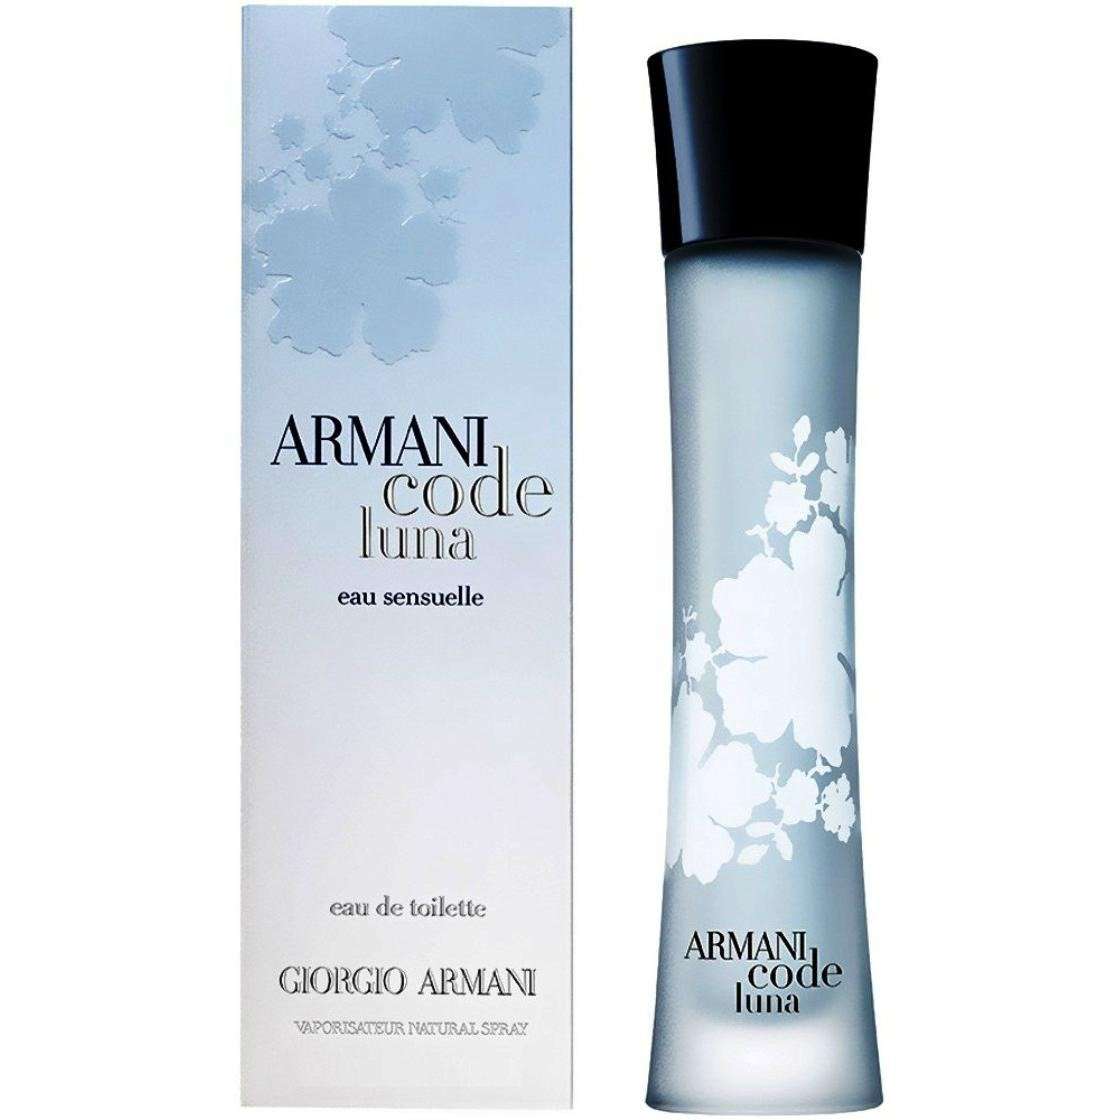 giorgio armani code perfume